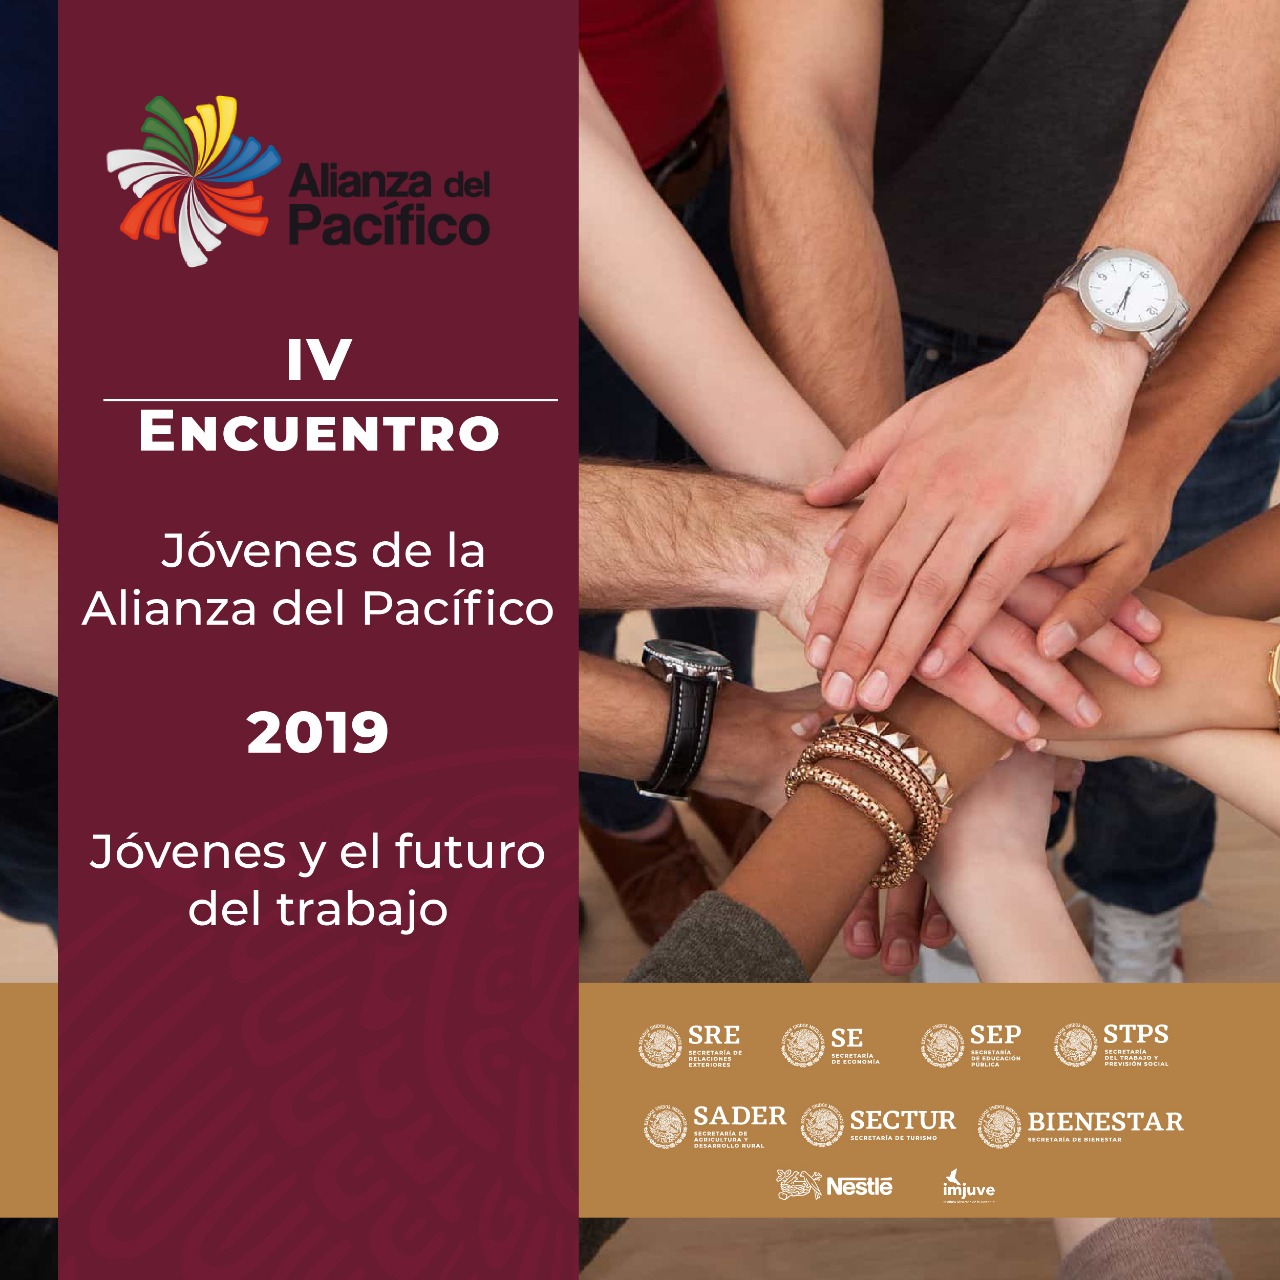 IV Encuentro Jóvenes de la Alianza del Pacífico 2019